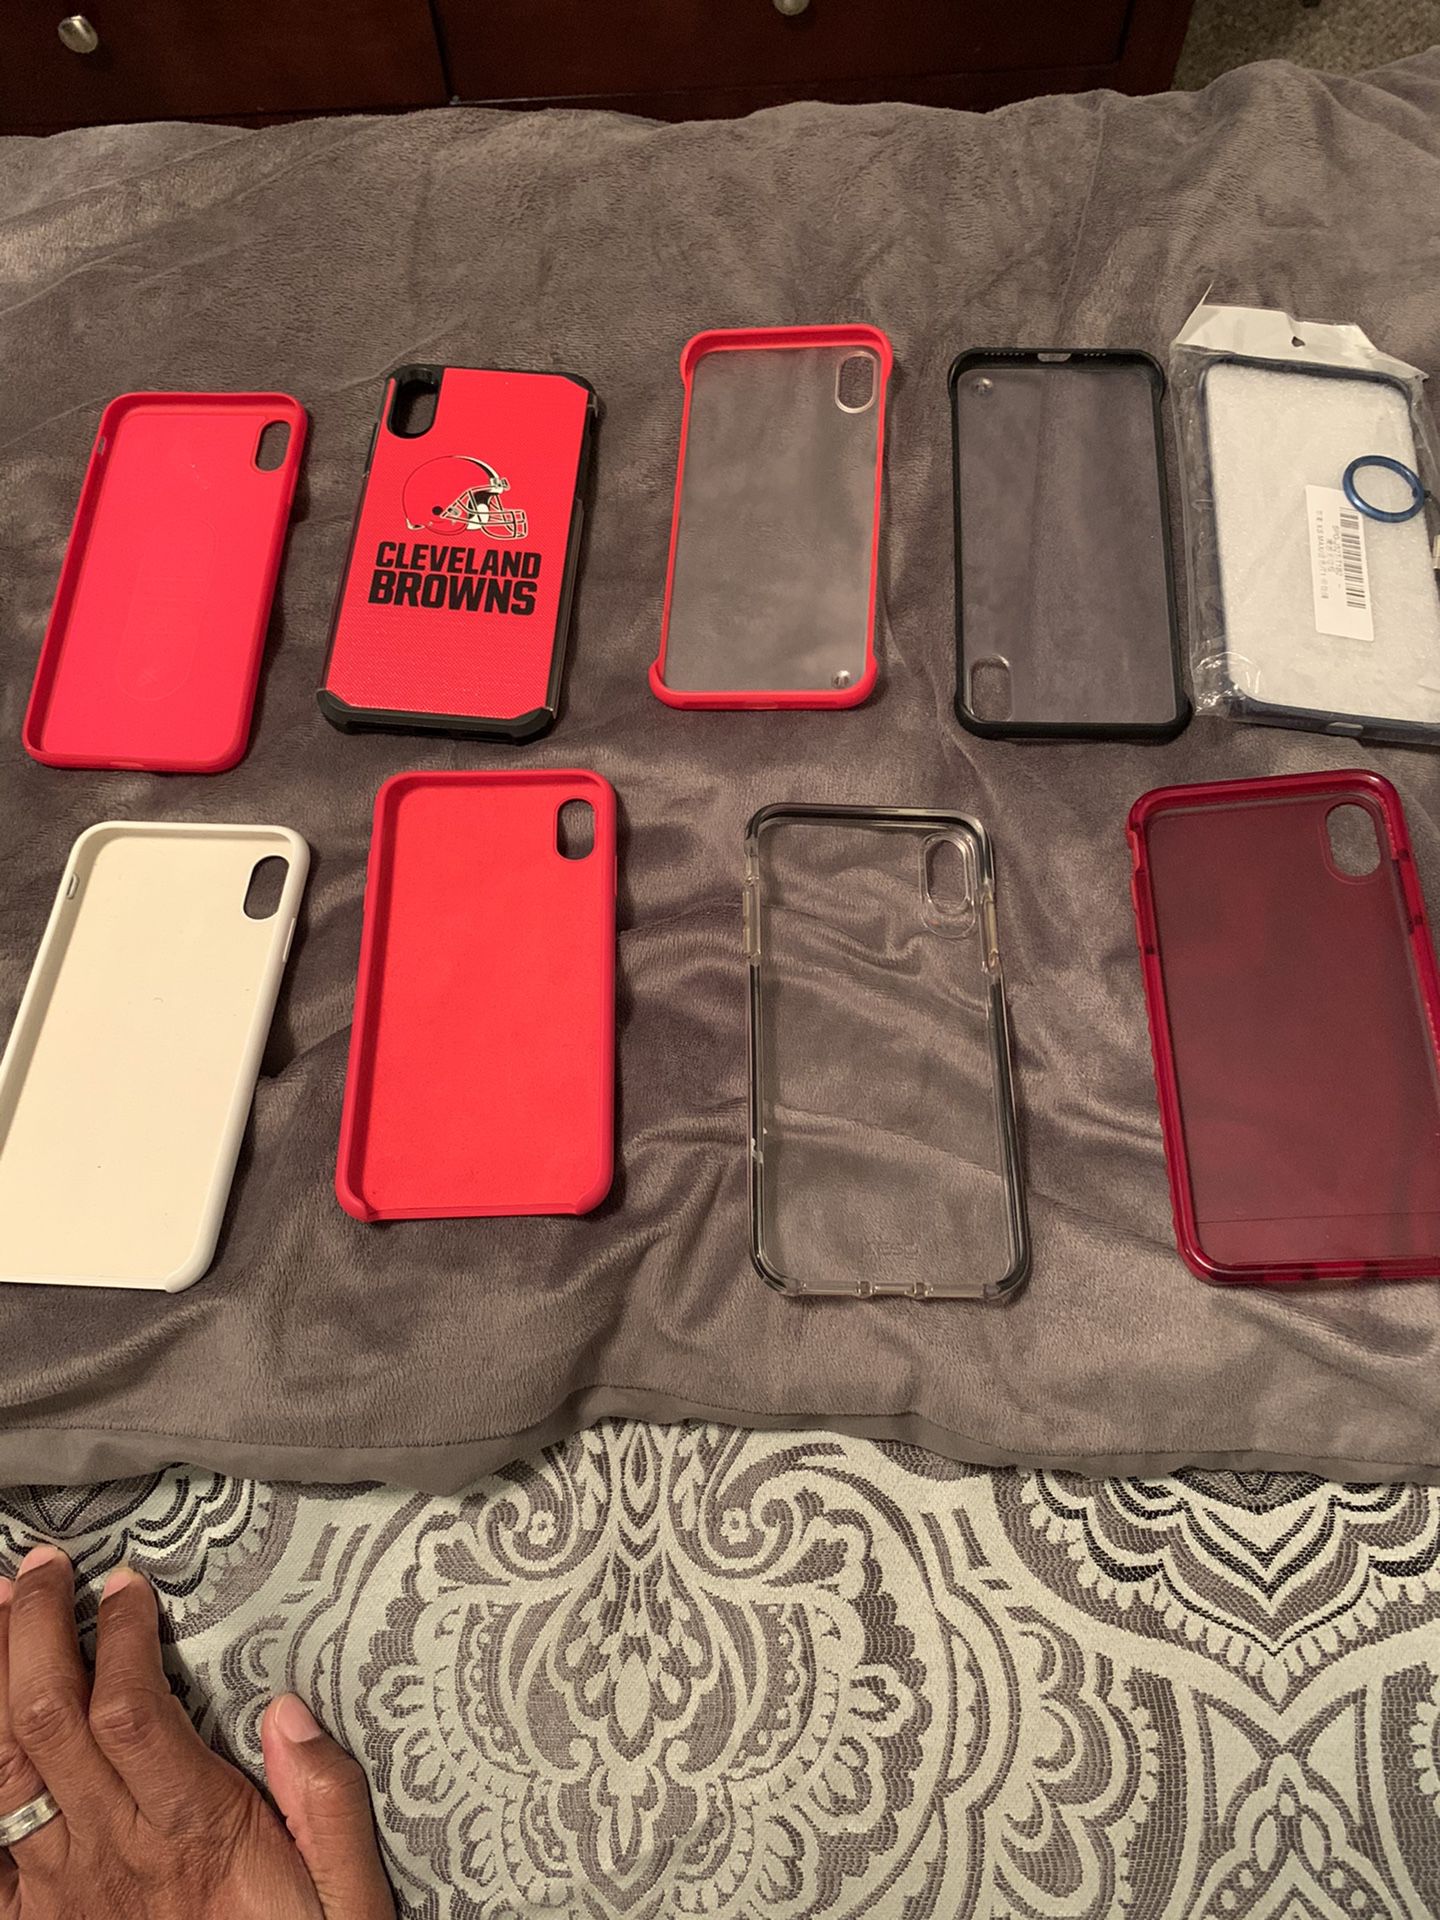 iPhone XS Max cases